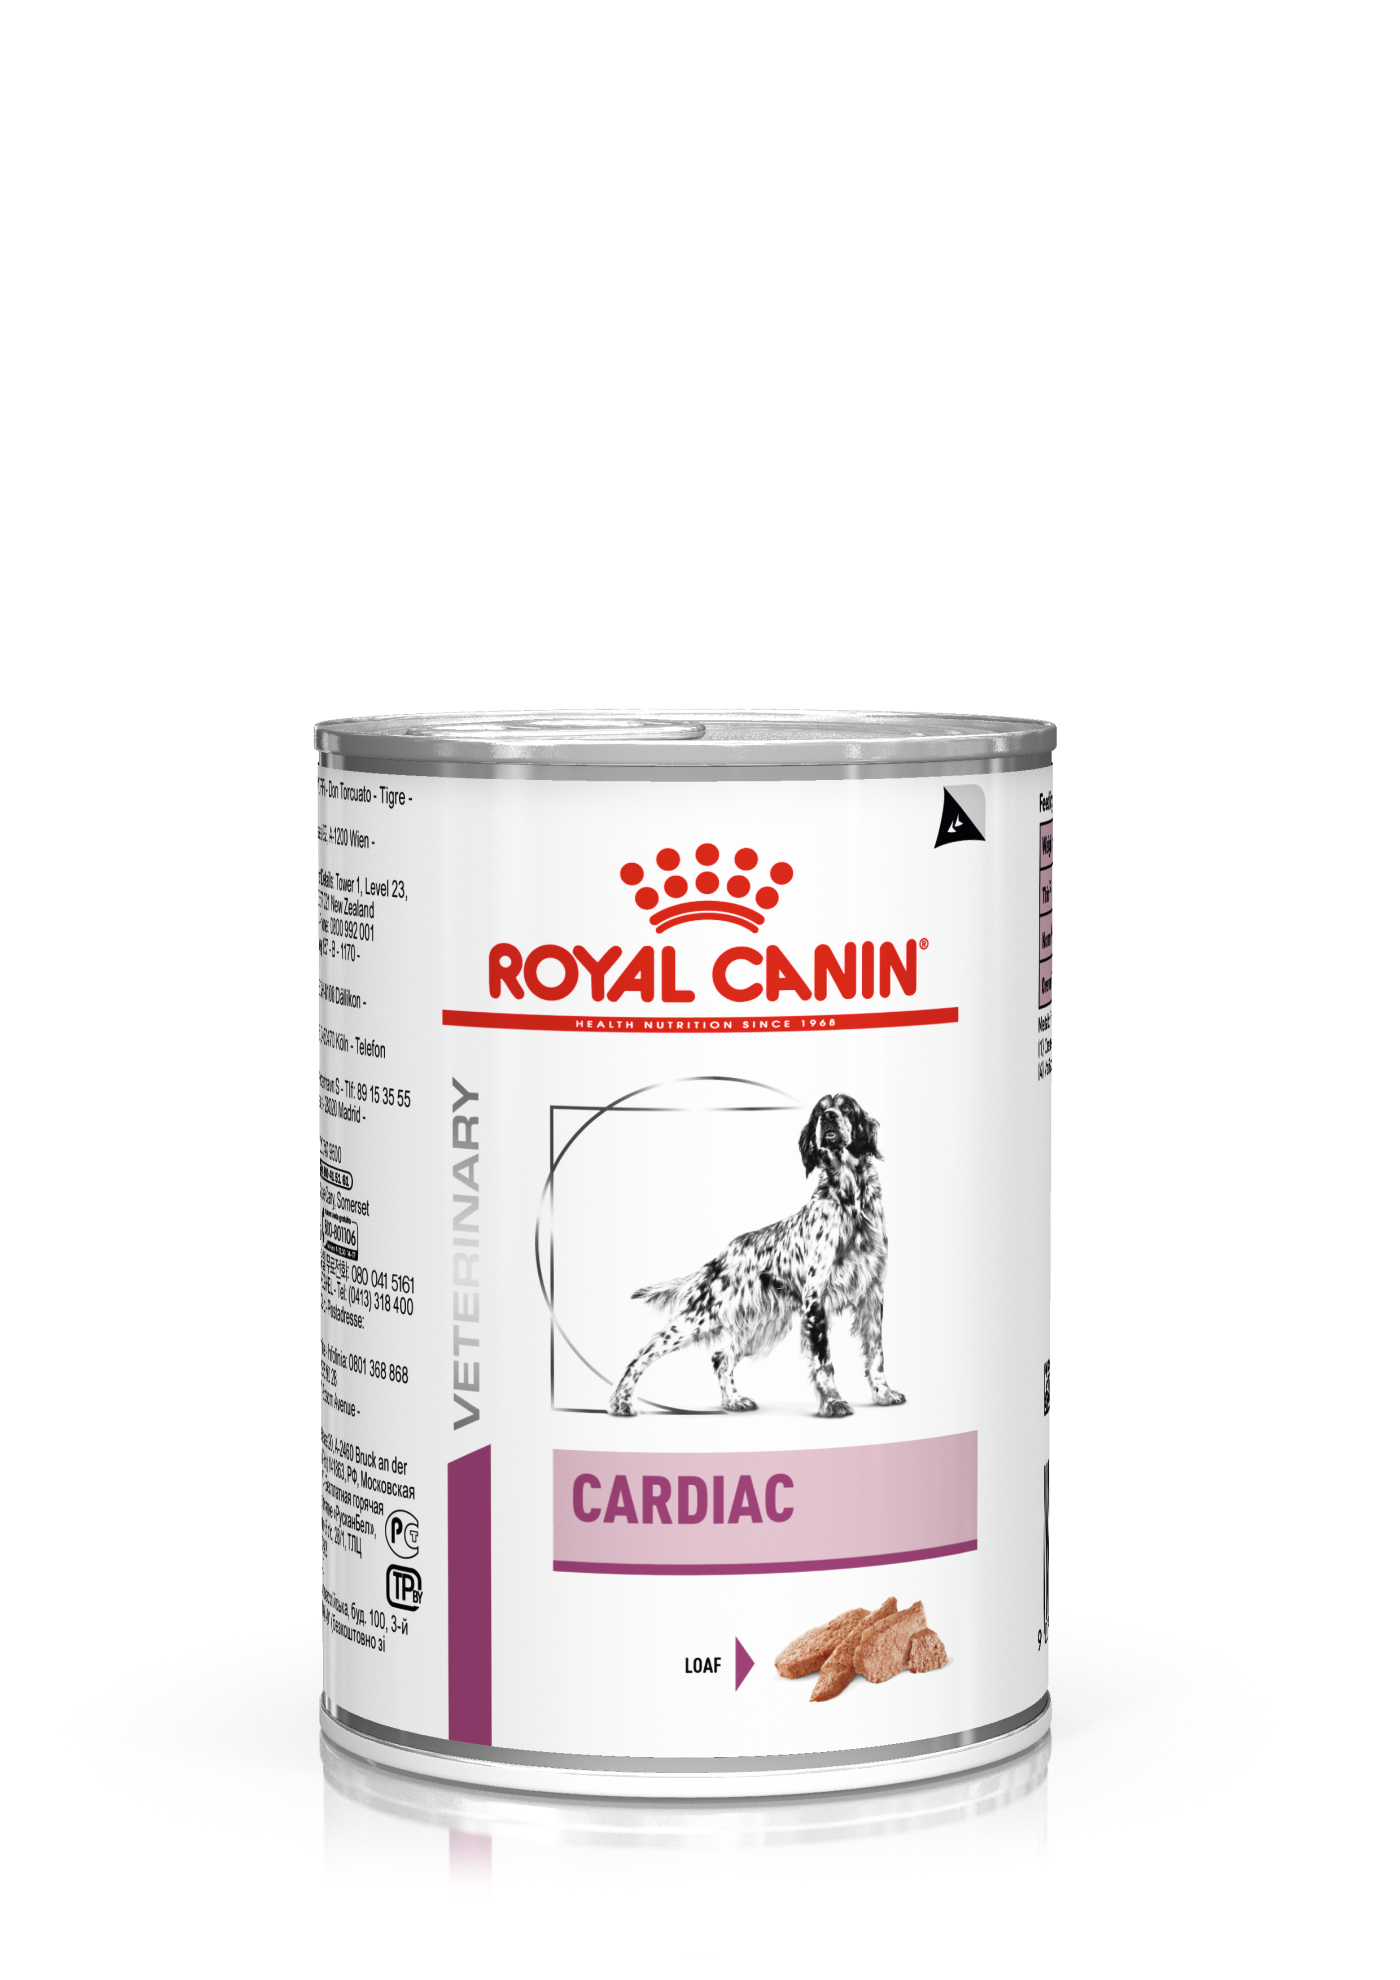 Royal Canin Cardiac 